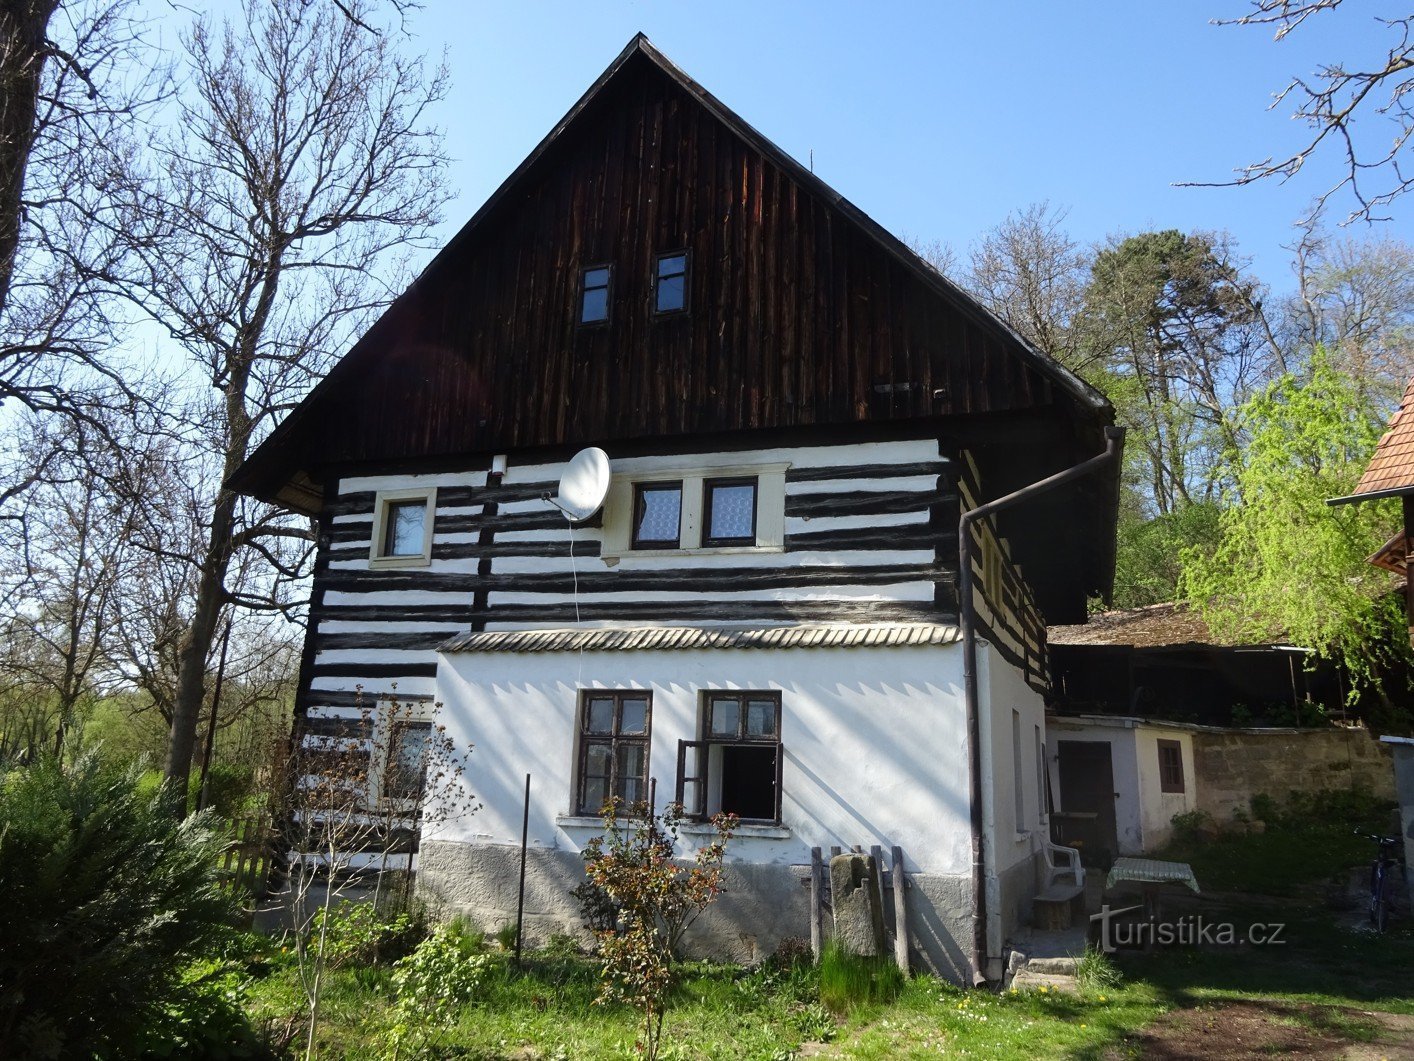 Ngôi làng Střehom gần Dolní Bouzov và cối xay truyện cổ tích